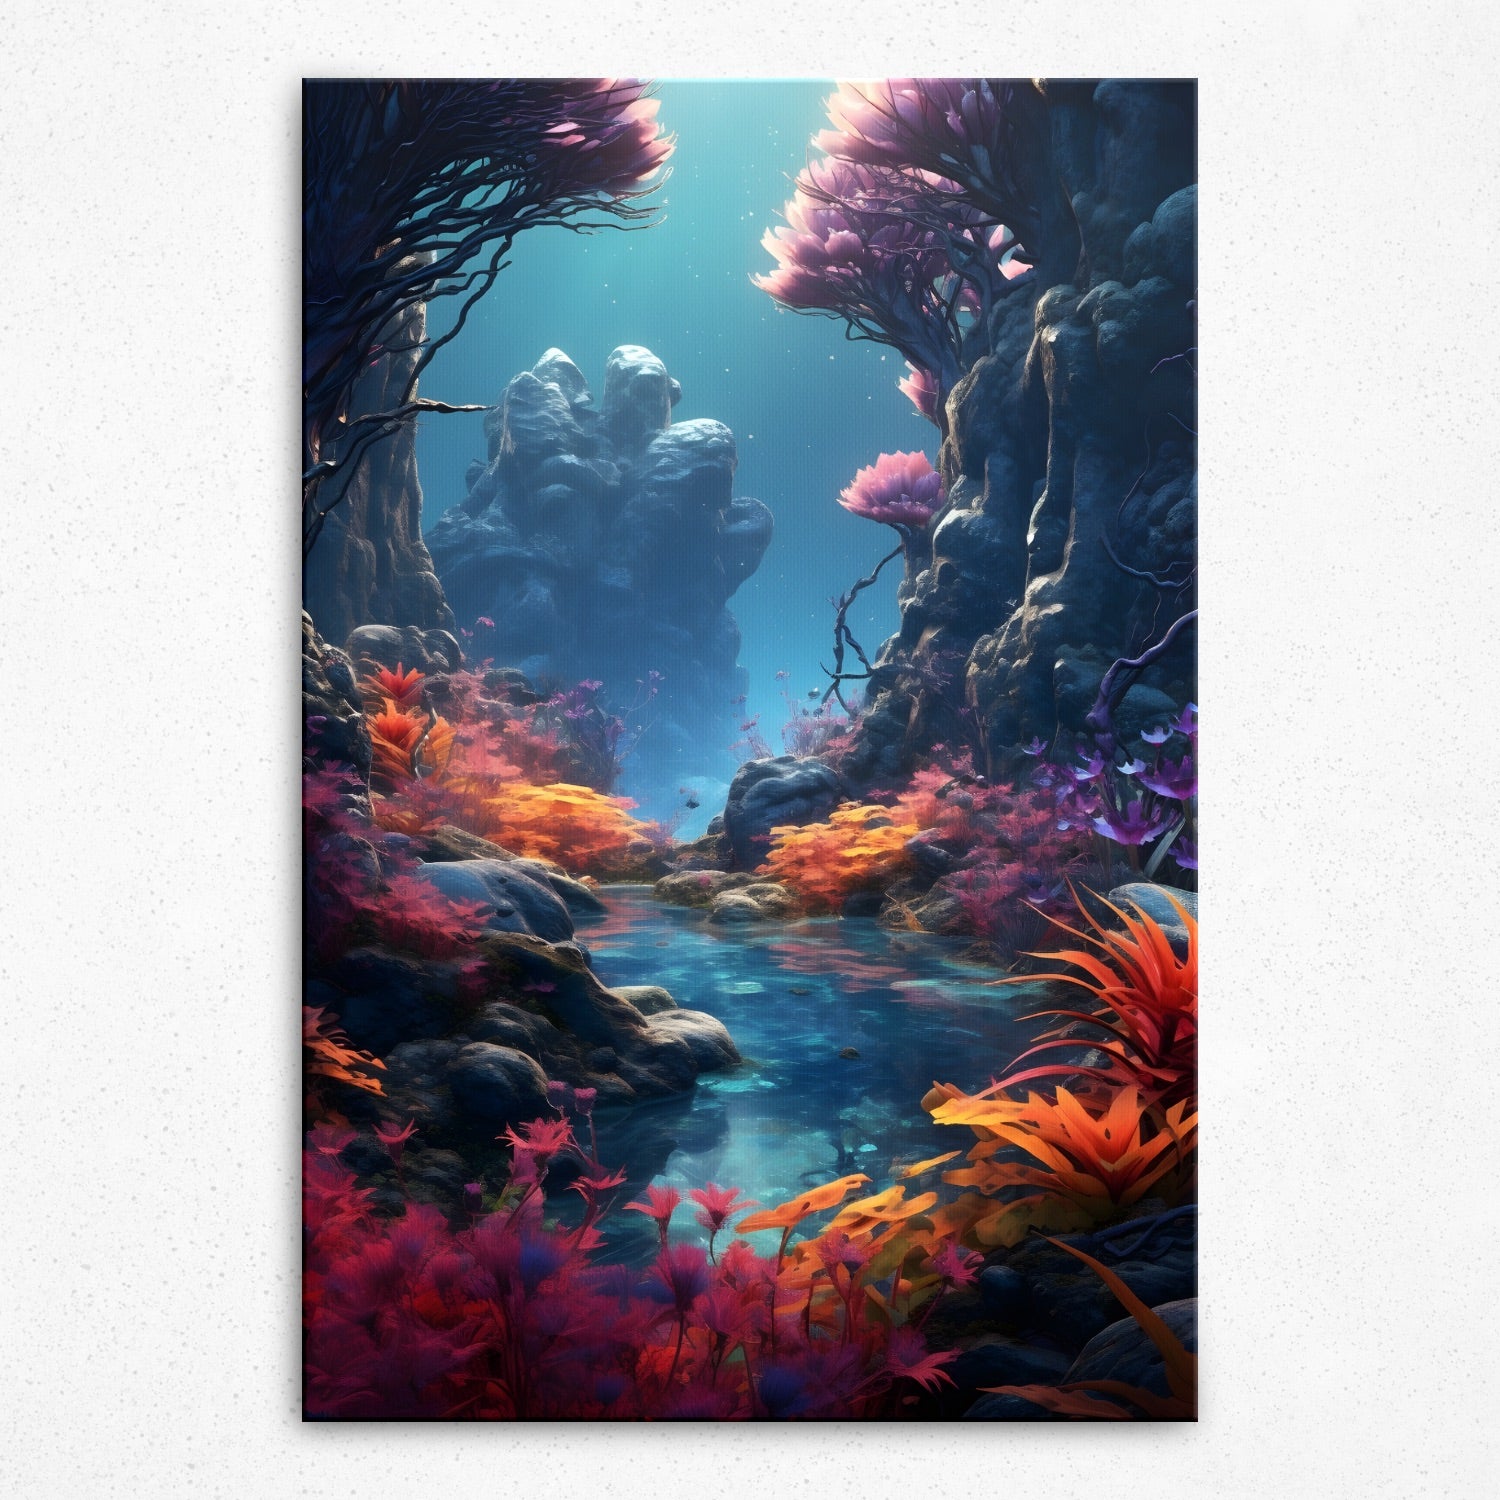 Aquaflora Serenade (Poster)